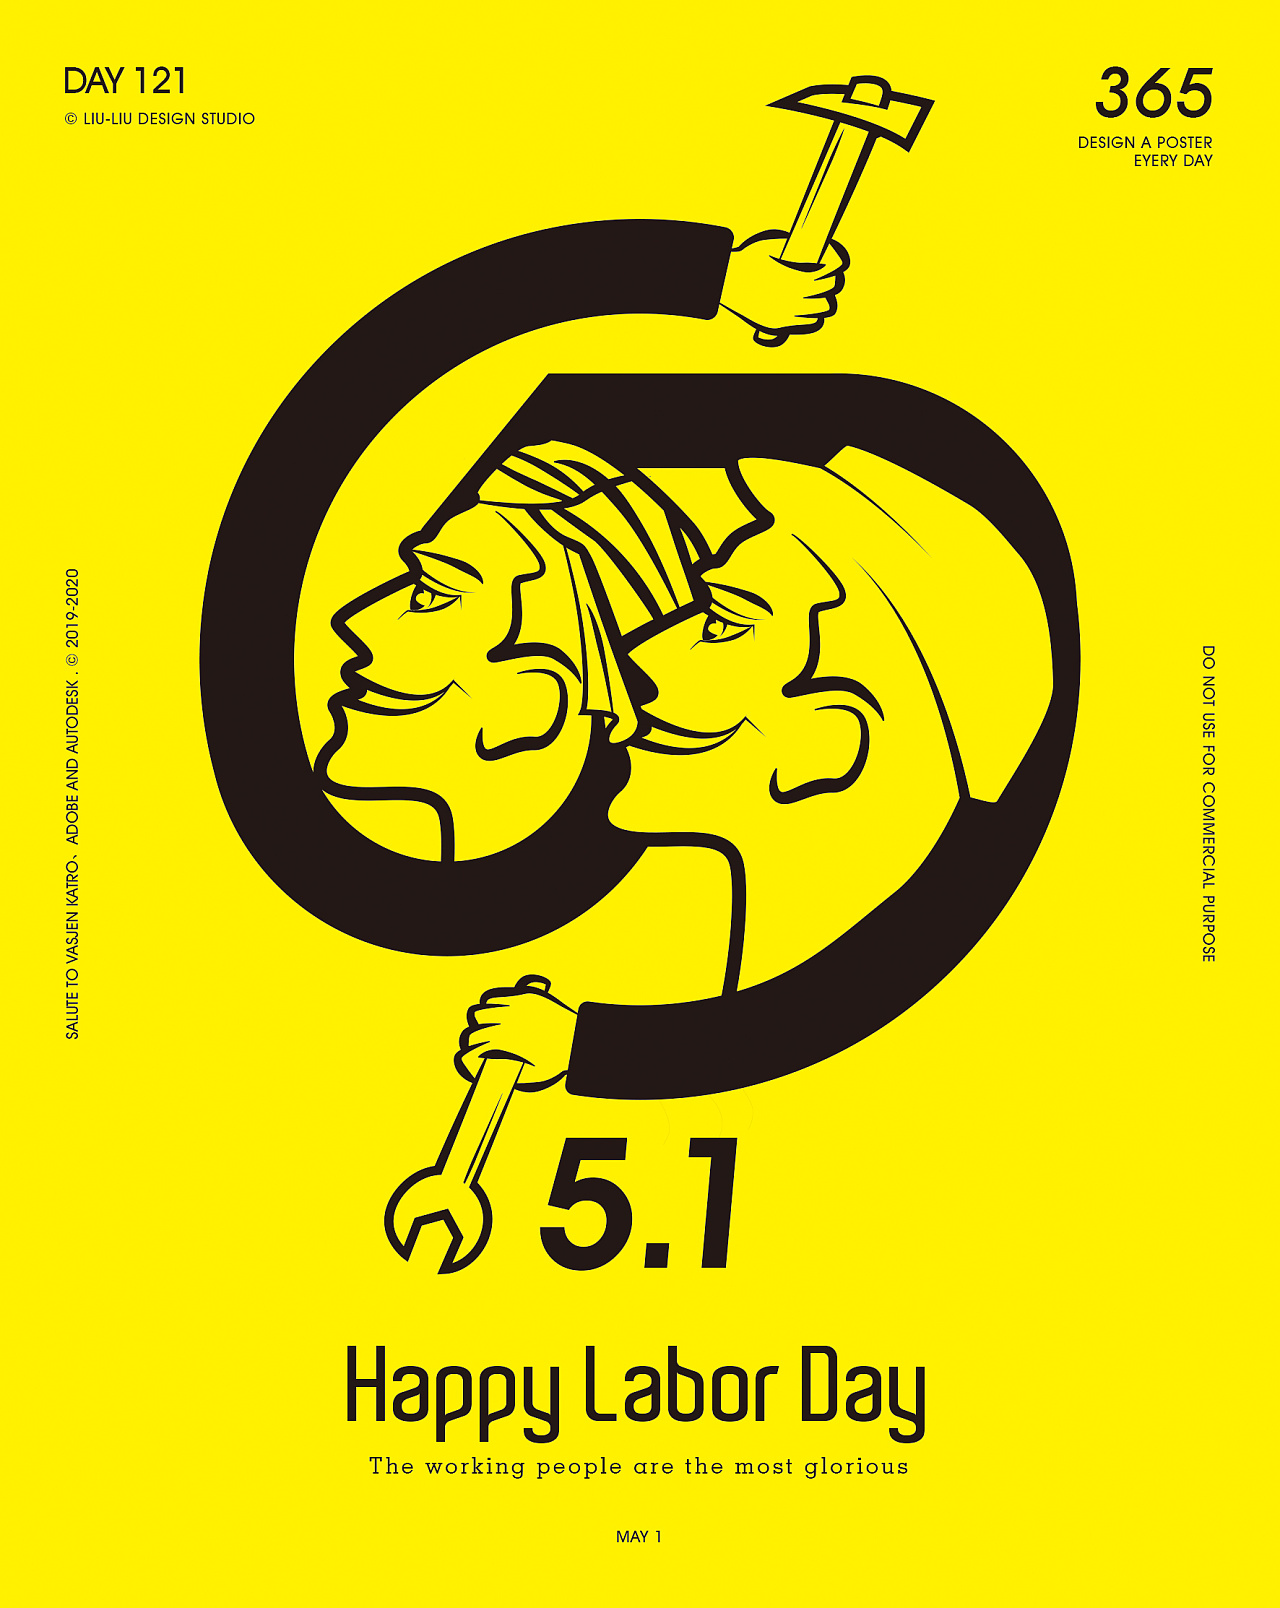 总商会祝愿大家五一劳动节快乐 | Happy Labour Day – 马来西亚中资企业总商会